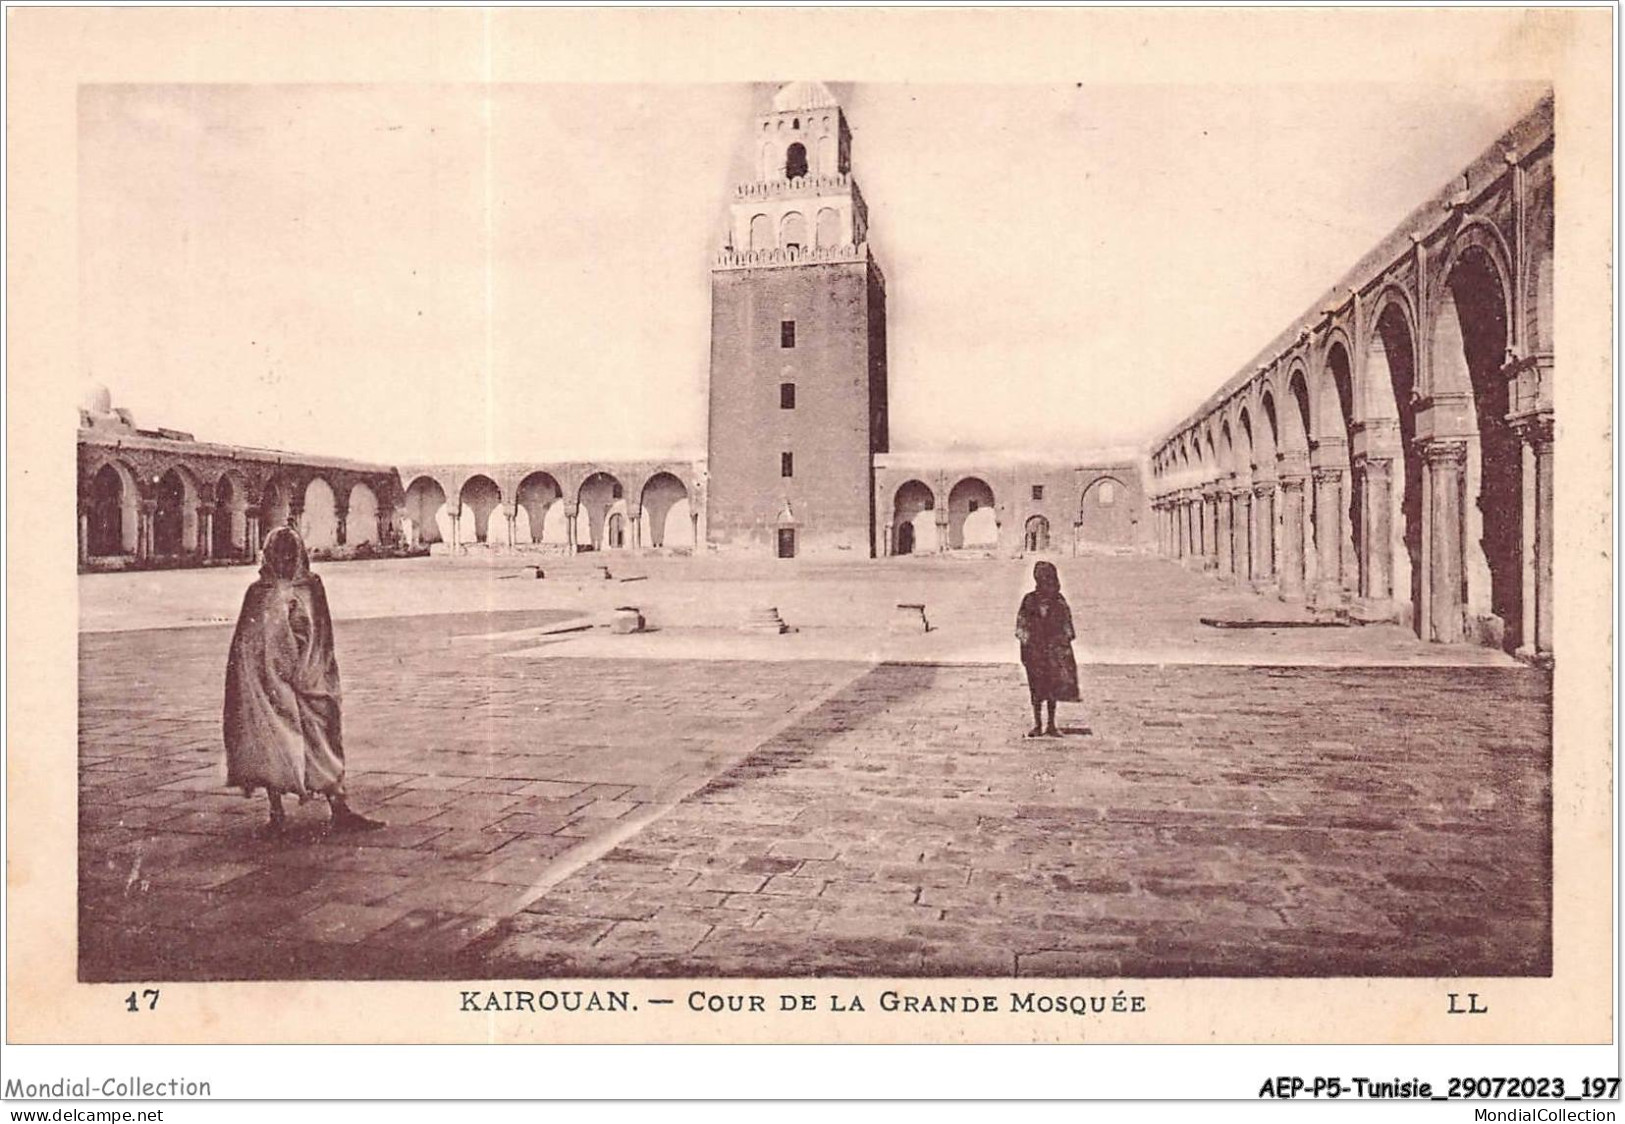 AEPP5-TUNISIE-0466 - KAIROUAN - COUR DE LA GRANDE MOSQUEE - Tunisia